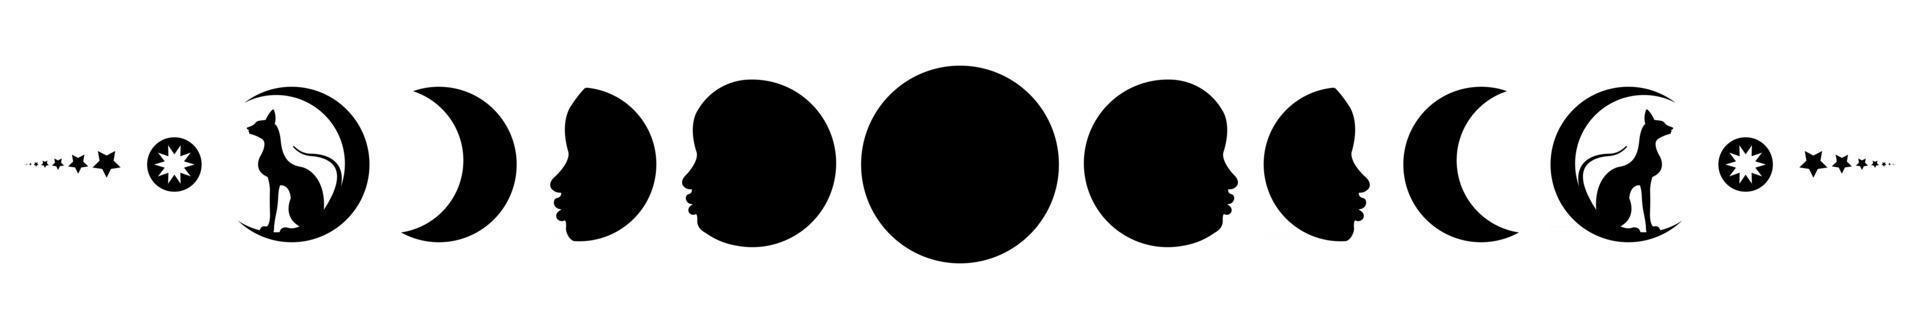 fases da lua. lua tripla e gatos pretos, símbolo wiccan pagão vetor